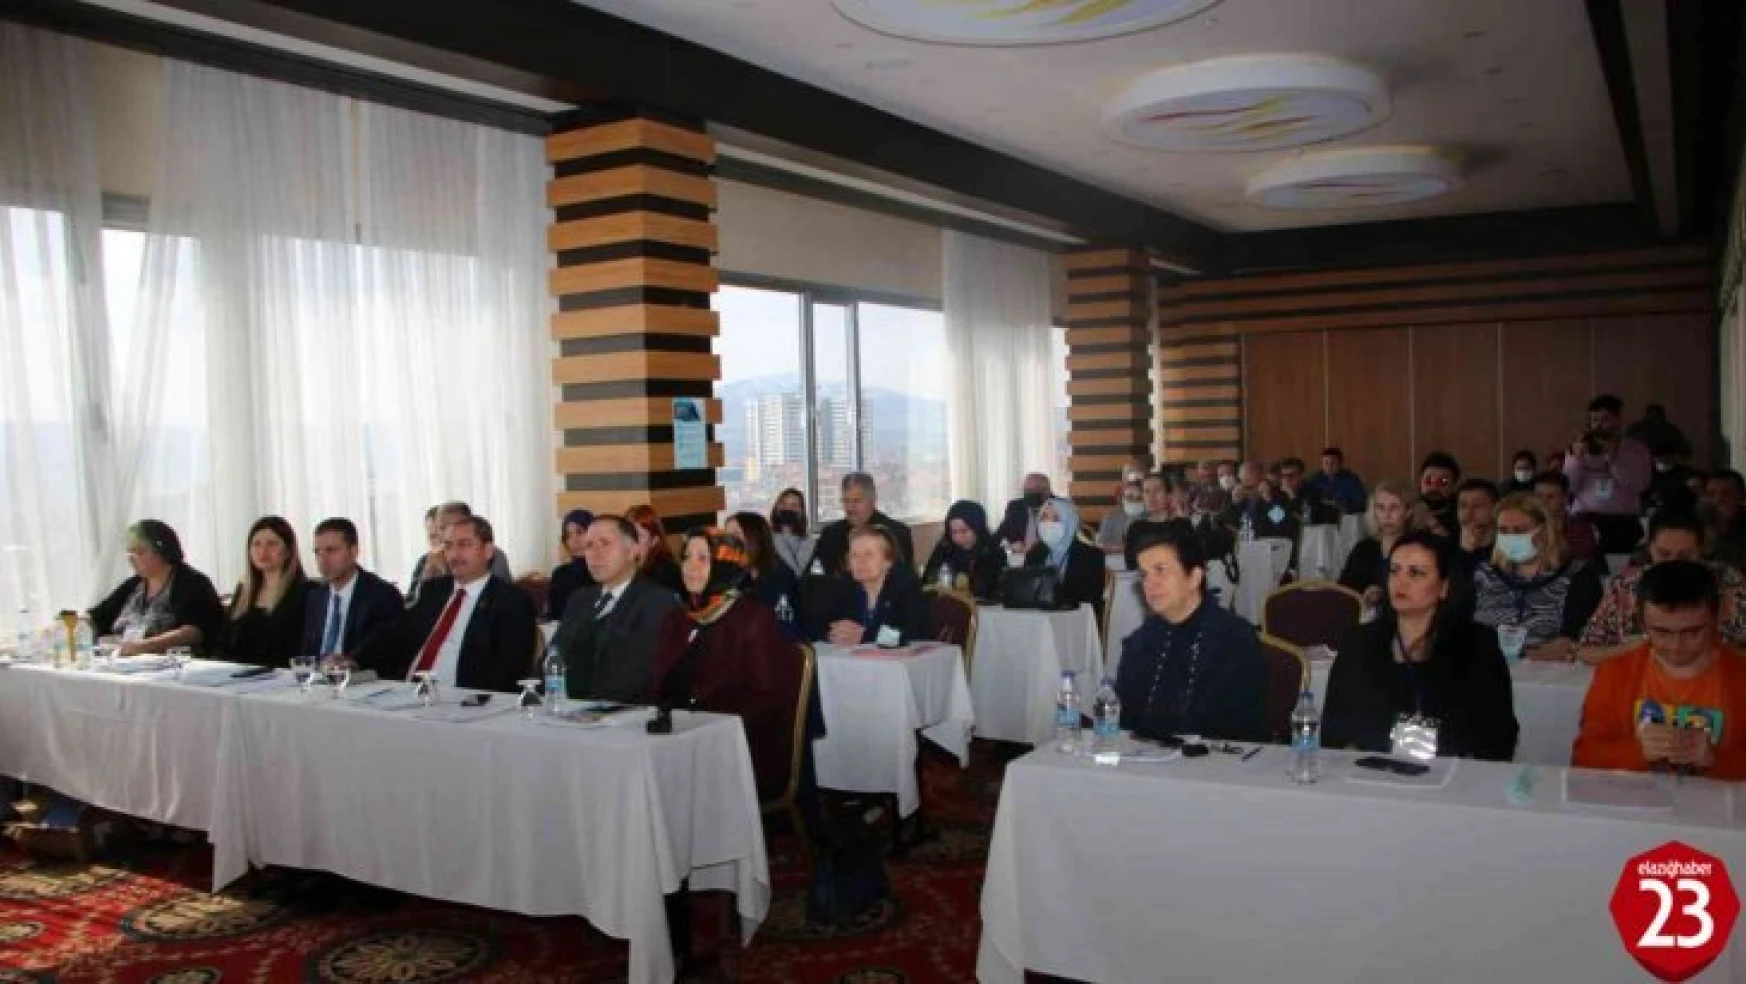 Elazığ'da Görünmezi Görünür Kılmak Projesi çalıştayı açılış toplantısı yapıldı